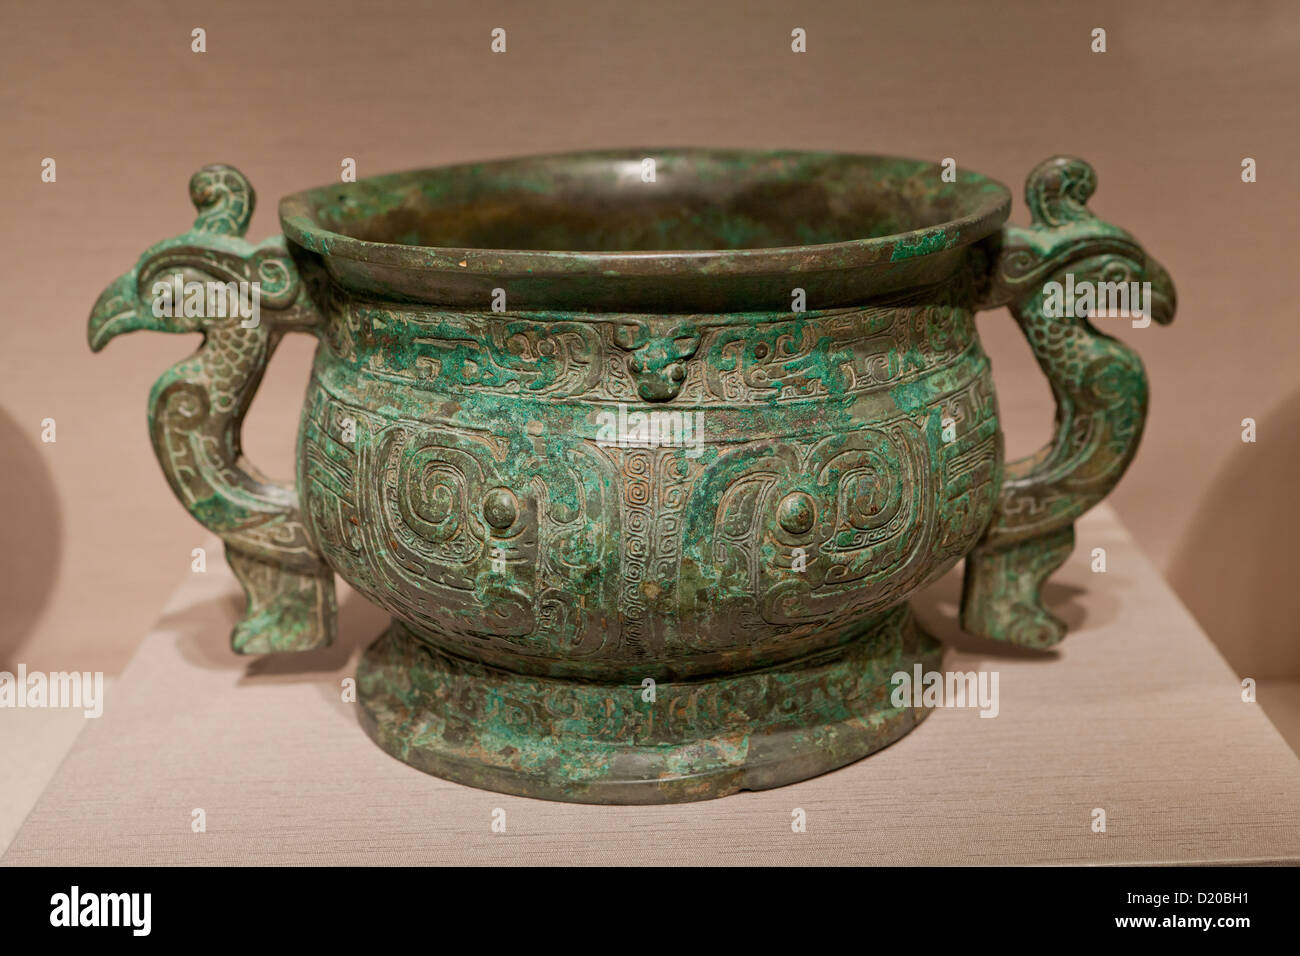 Conteneur alimentaire - rituel dynastie Zhou de l'Ouest, 10e siècle avant J.-C., Chine Banque D'Images